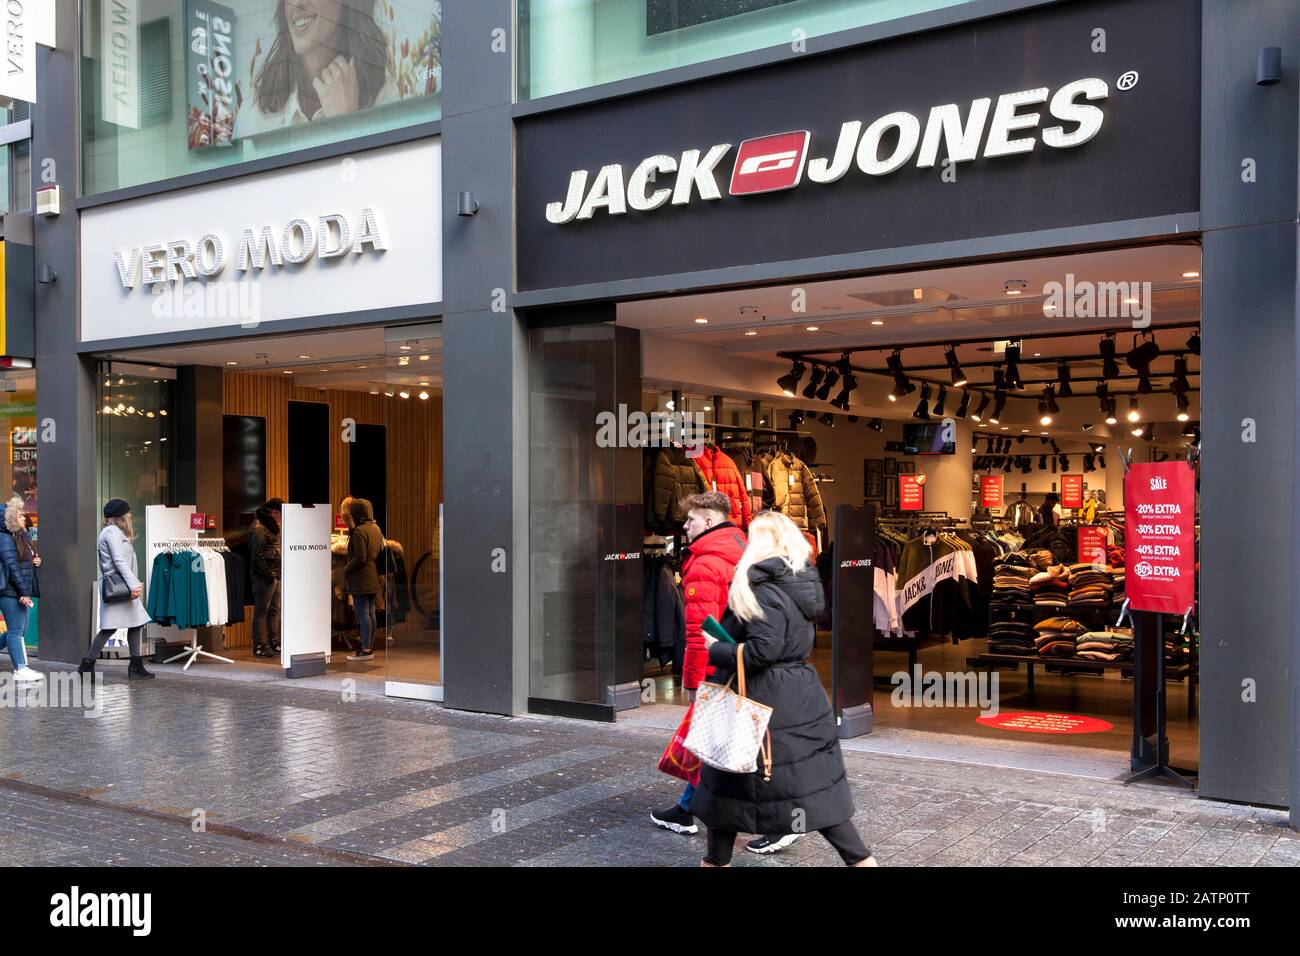 Vero Moda und Jack & Jones Geschäfte an der Einkaufsstraße hohe Straße,  Köln, Deutschland. Vero Moda und Jack & Jones Laeden auf der Einkaufsstraße  Ho Stockfotografie - Alamy